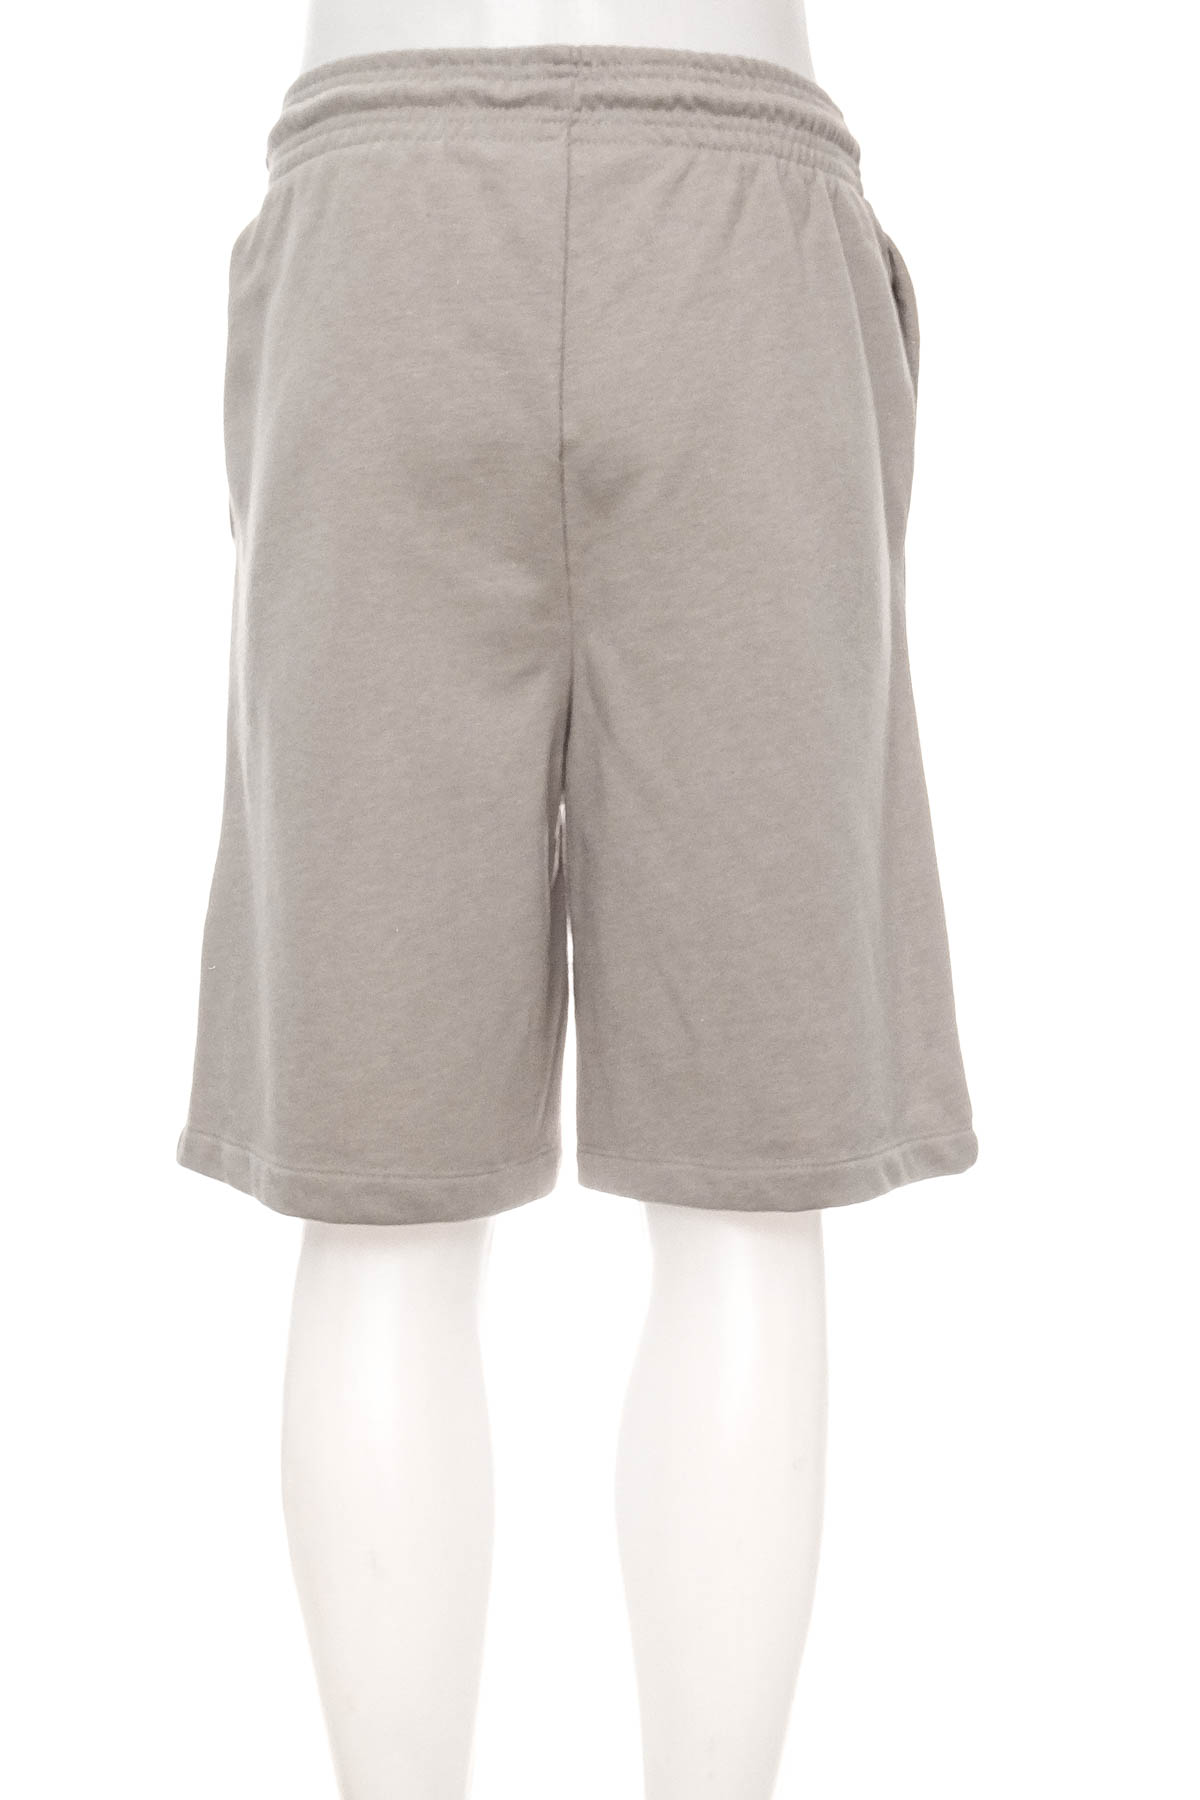 Pantaloni scurți bărbați - H&M Basic - 1